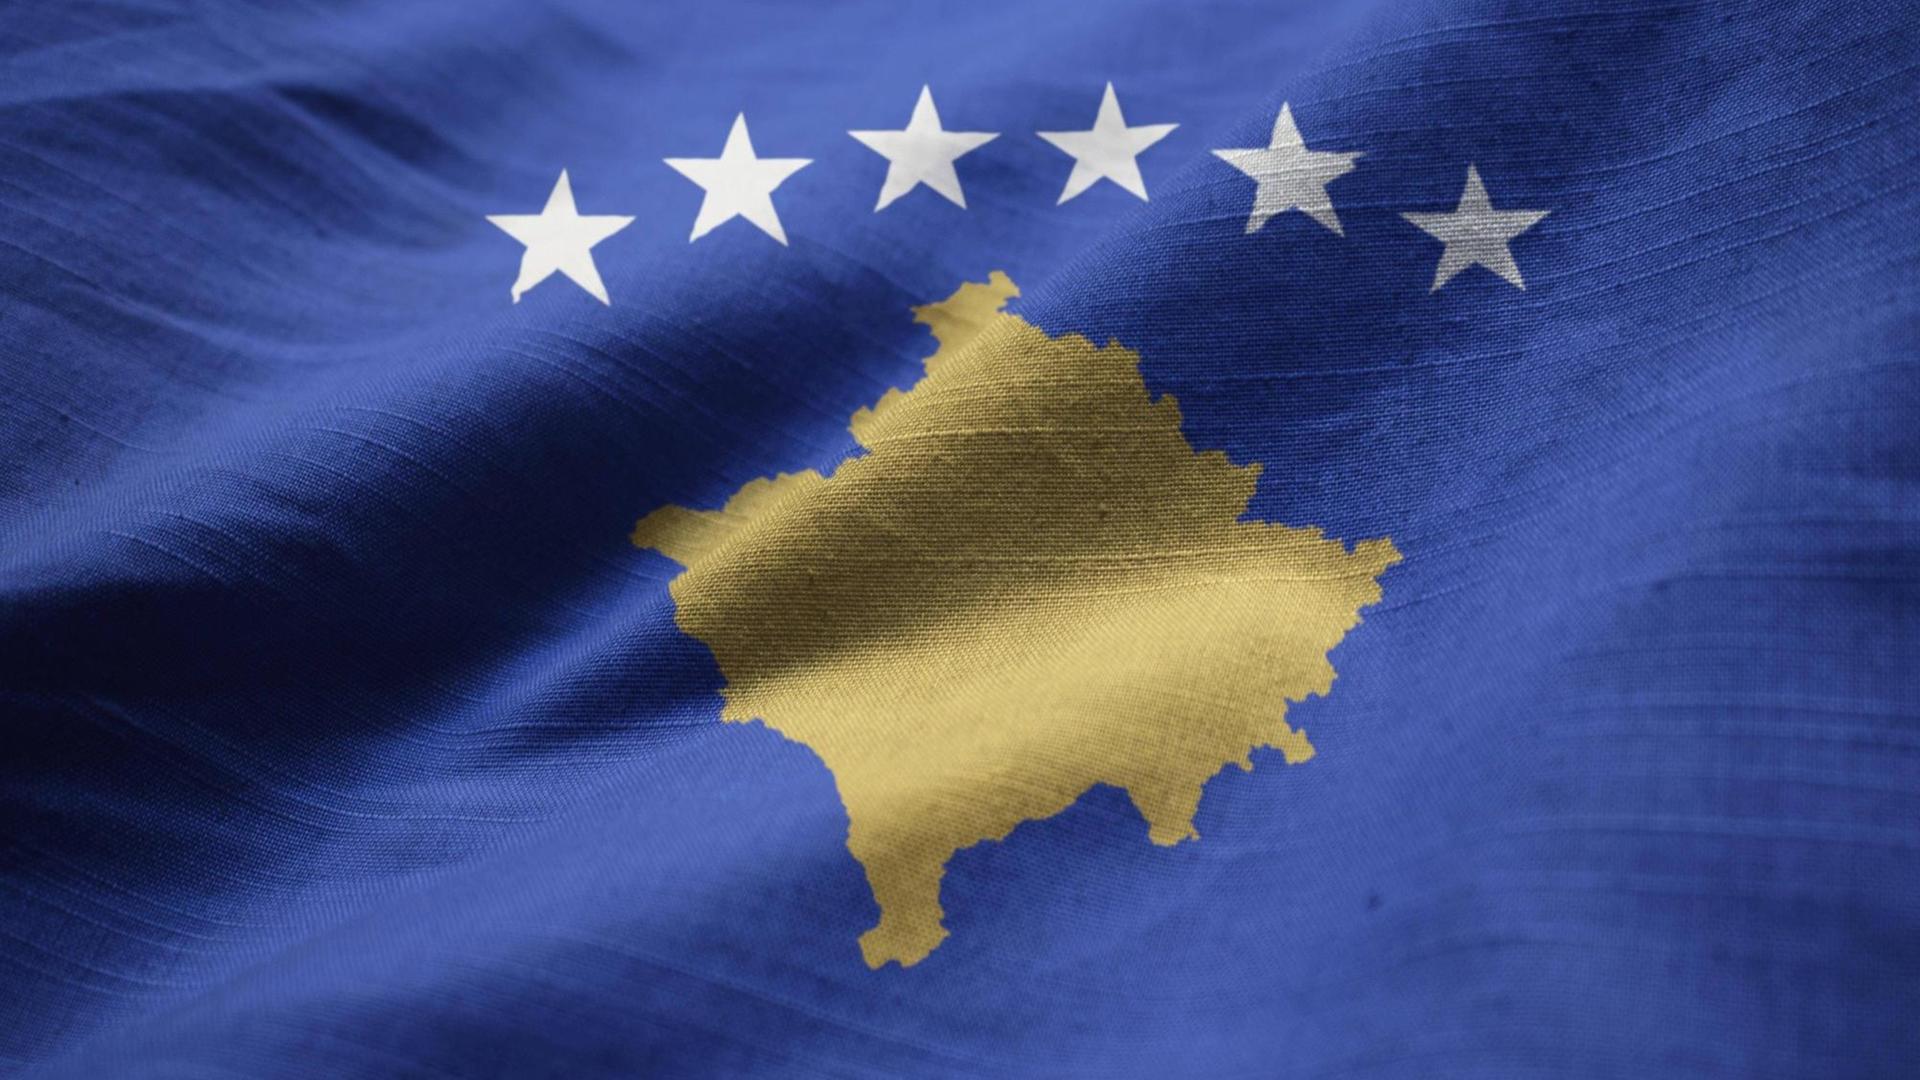 Die Flagge zeigt auf blauem Hintergrund den Umriss des Kosovo. Darüber sind sechs Sterne im Halbkreis platziert.